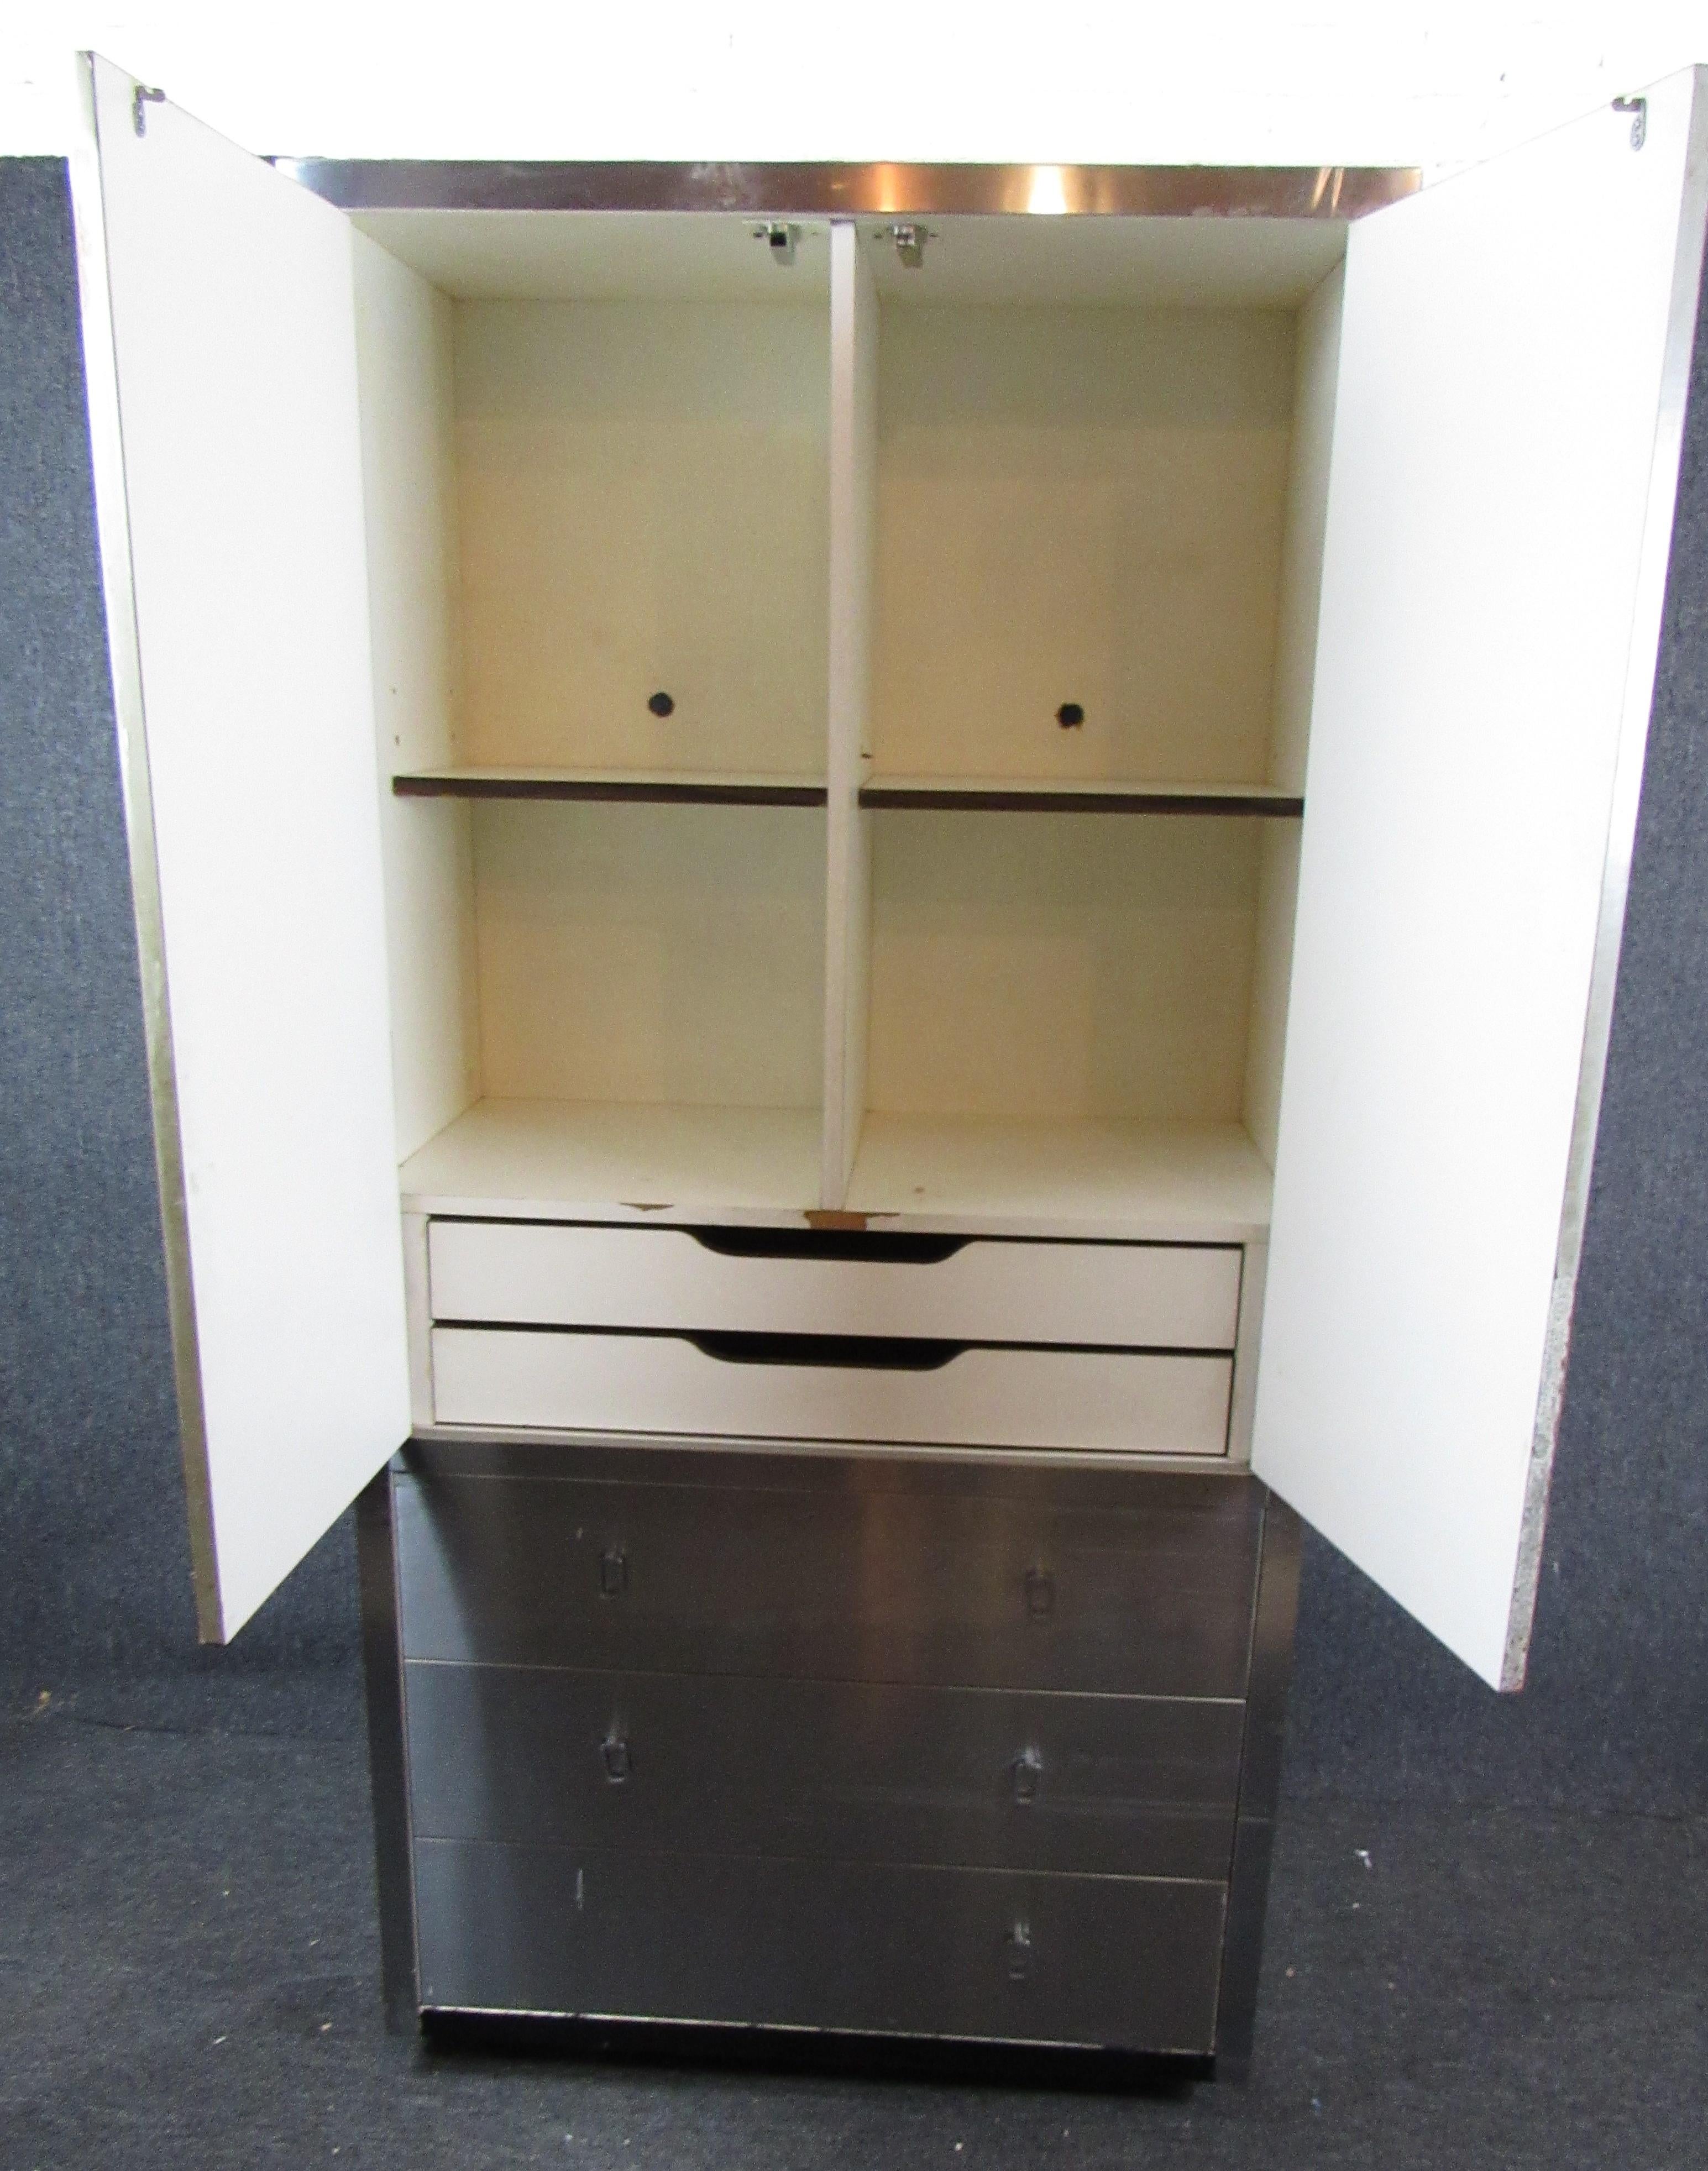 Grande armoire plaquée avec tiroirs et rangements. Bandes attrayantes de couleur chrome et noire.
Veuillez confirmer le lieu NY ou NJ.